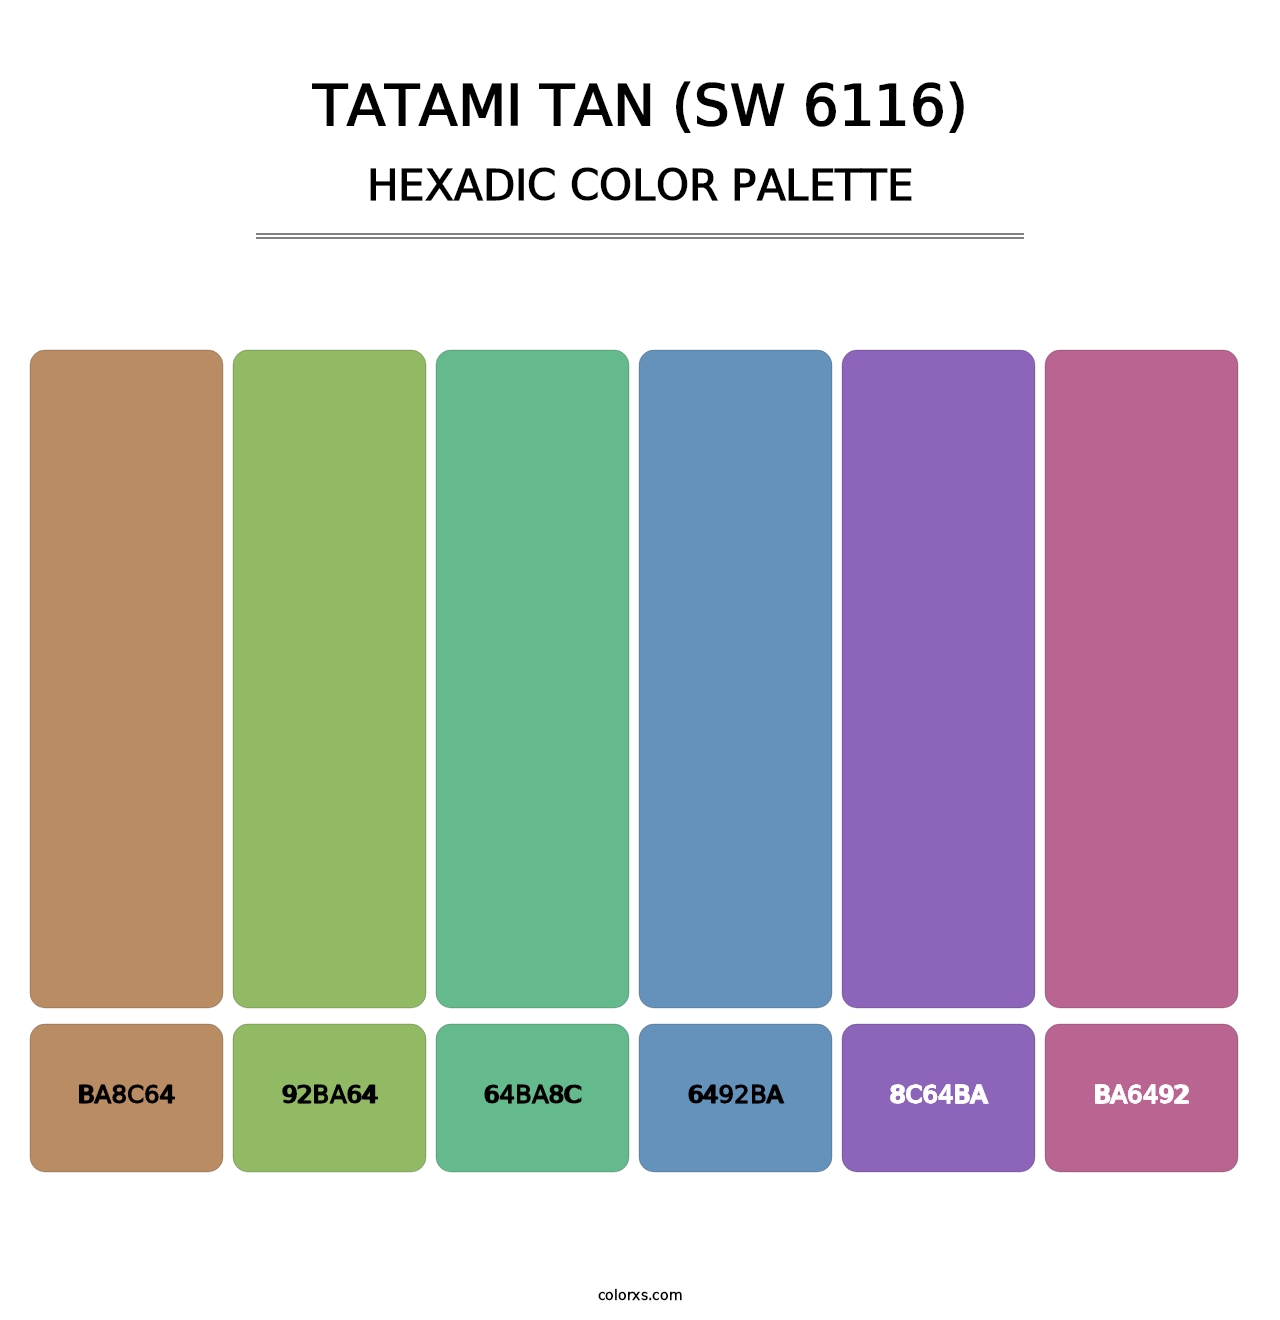 Tatami Tan (SW 6116) - Hexadic Color Palette